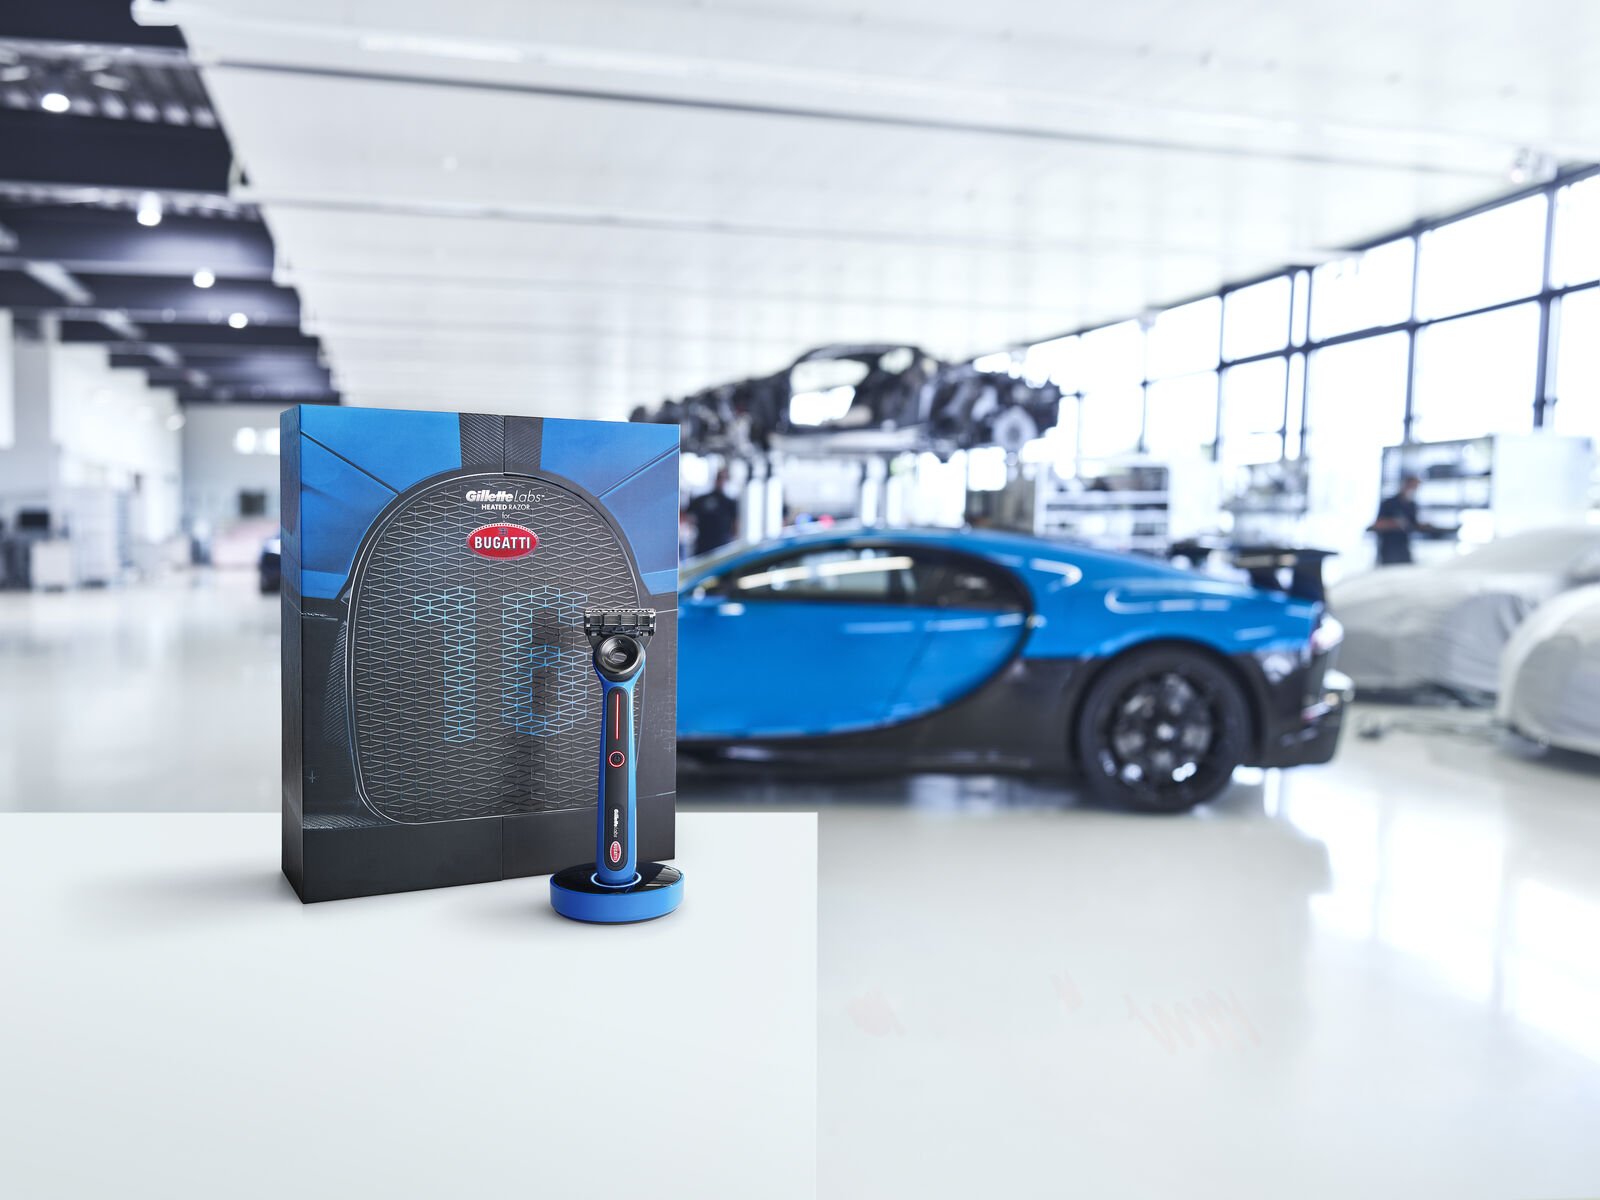 The GilletteLabs | Bugatti Special Edition Heated Razor